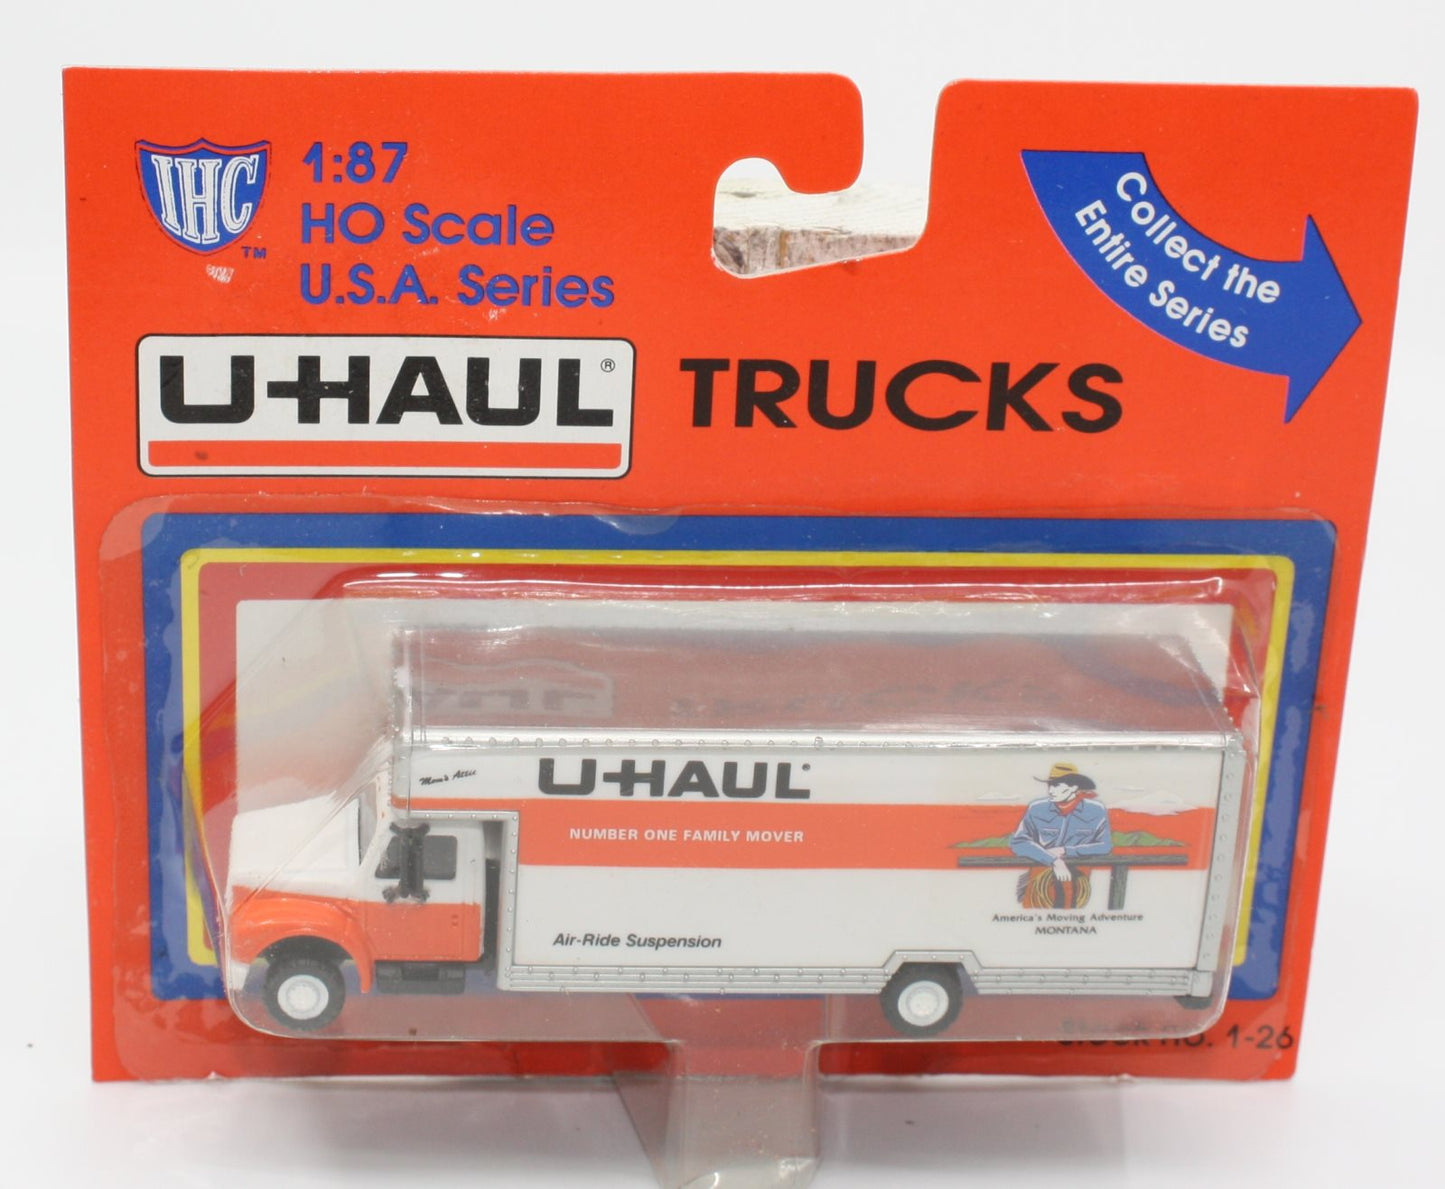 IHC 1-26 HO U.S.A. Series Montana U-Haul 26'''' Moving Truck